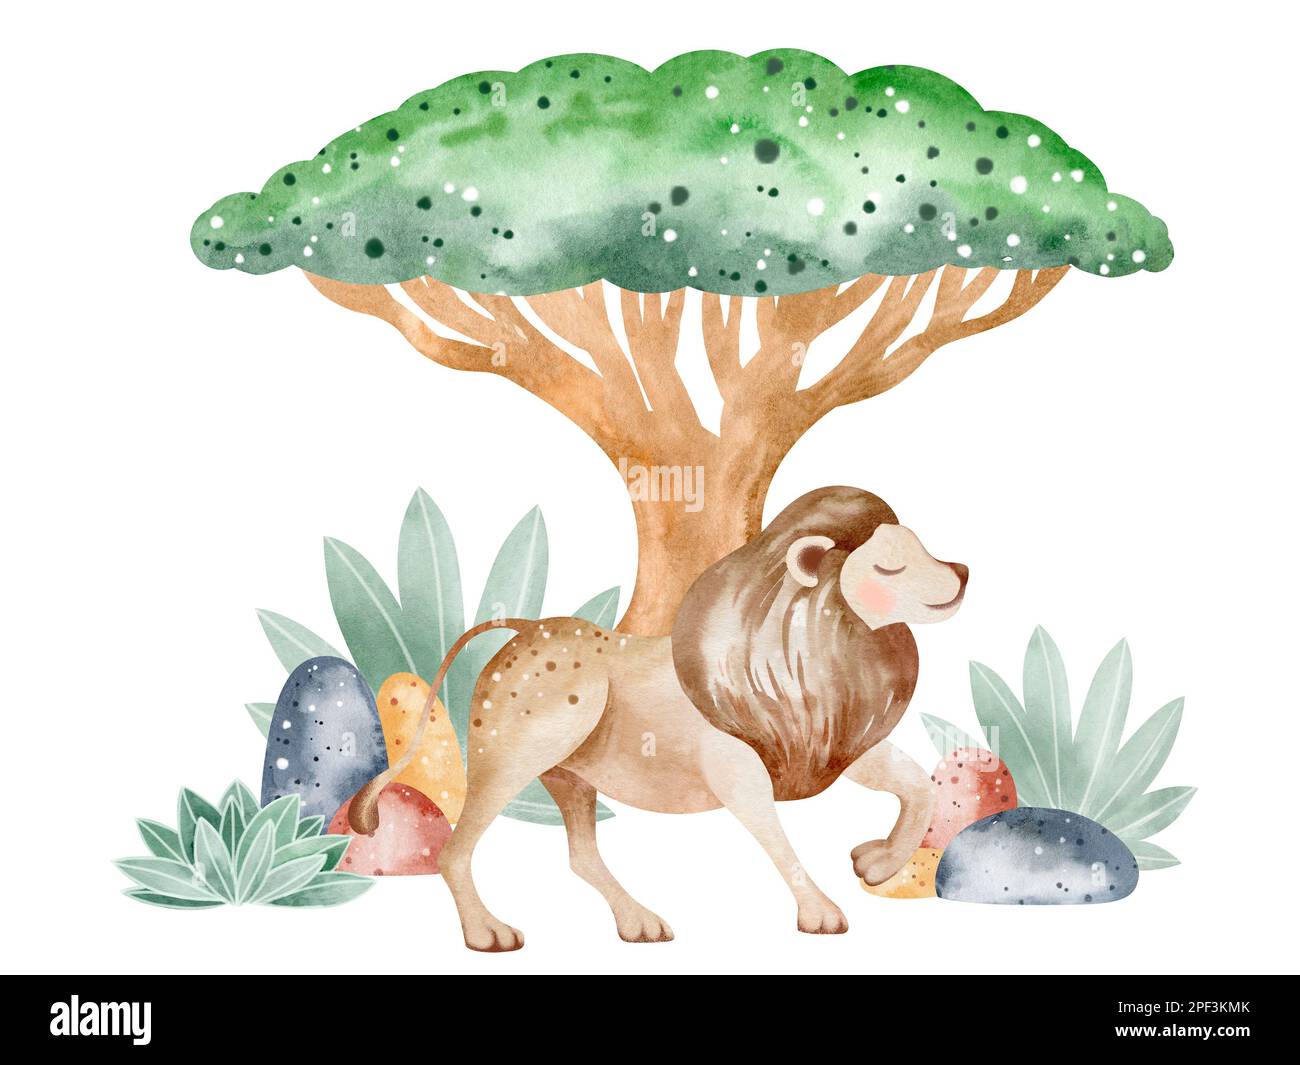 Ensemble d'illustrations aquarelles d'animaux de savane dans la nature. Illustration d'animaux sur fond blanc. Dessiné à la main. Banque D'Images